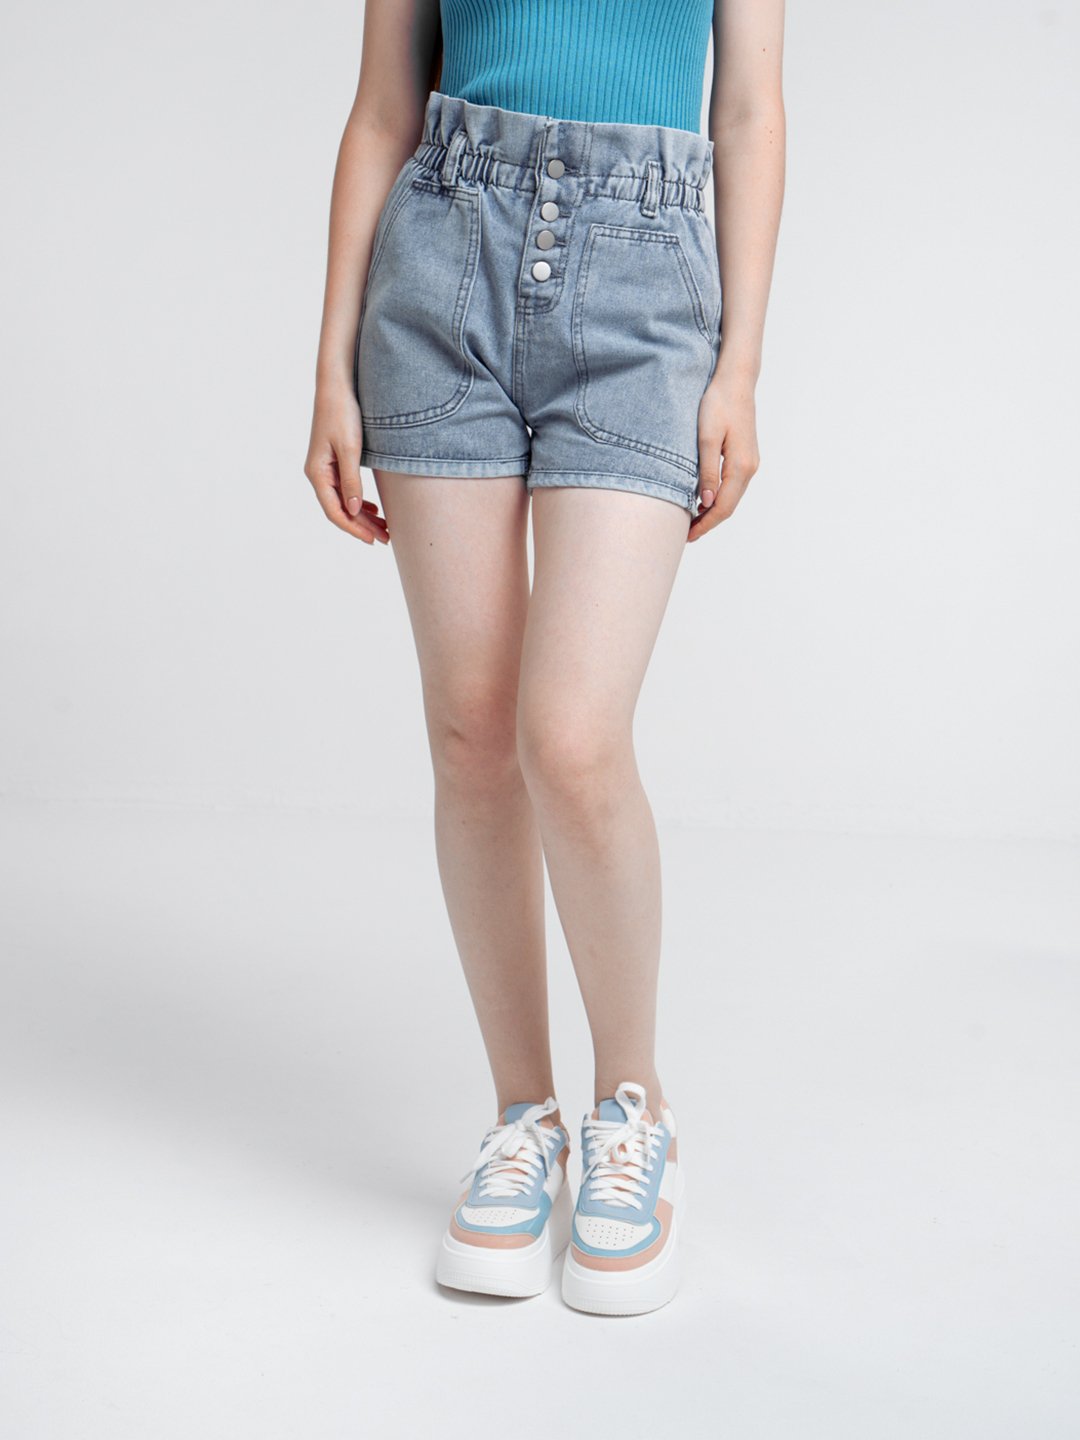 Джинсовые шорты женские купить в интернет-магазине OZON